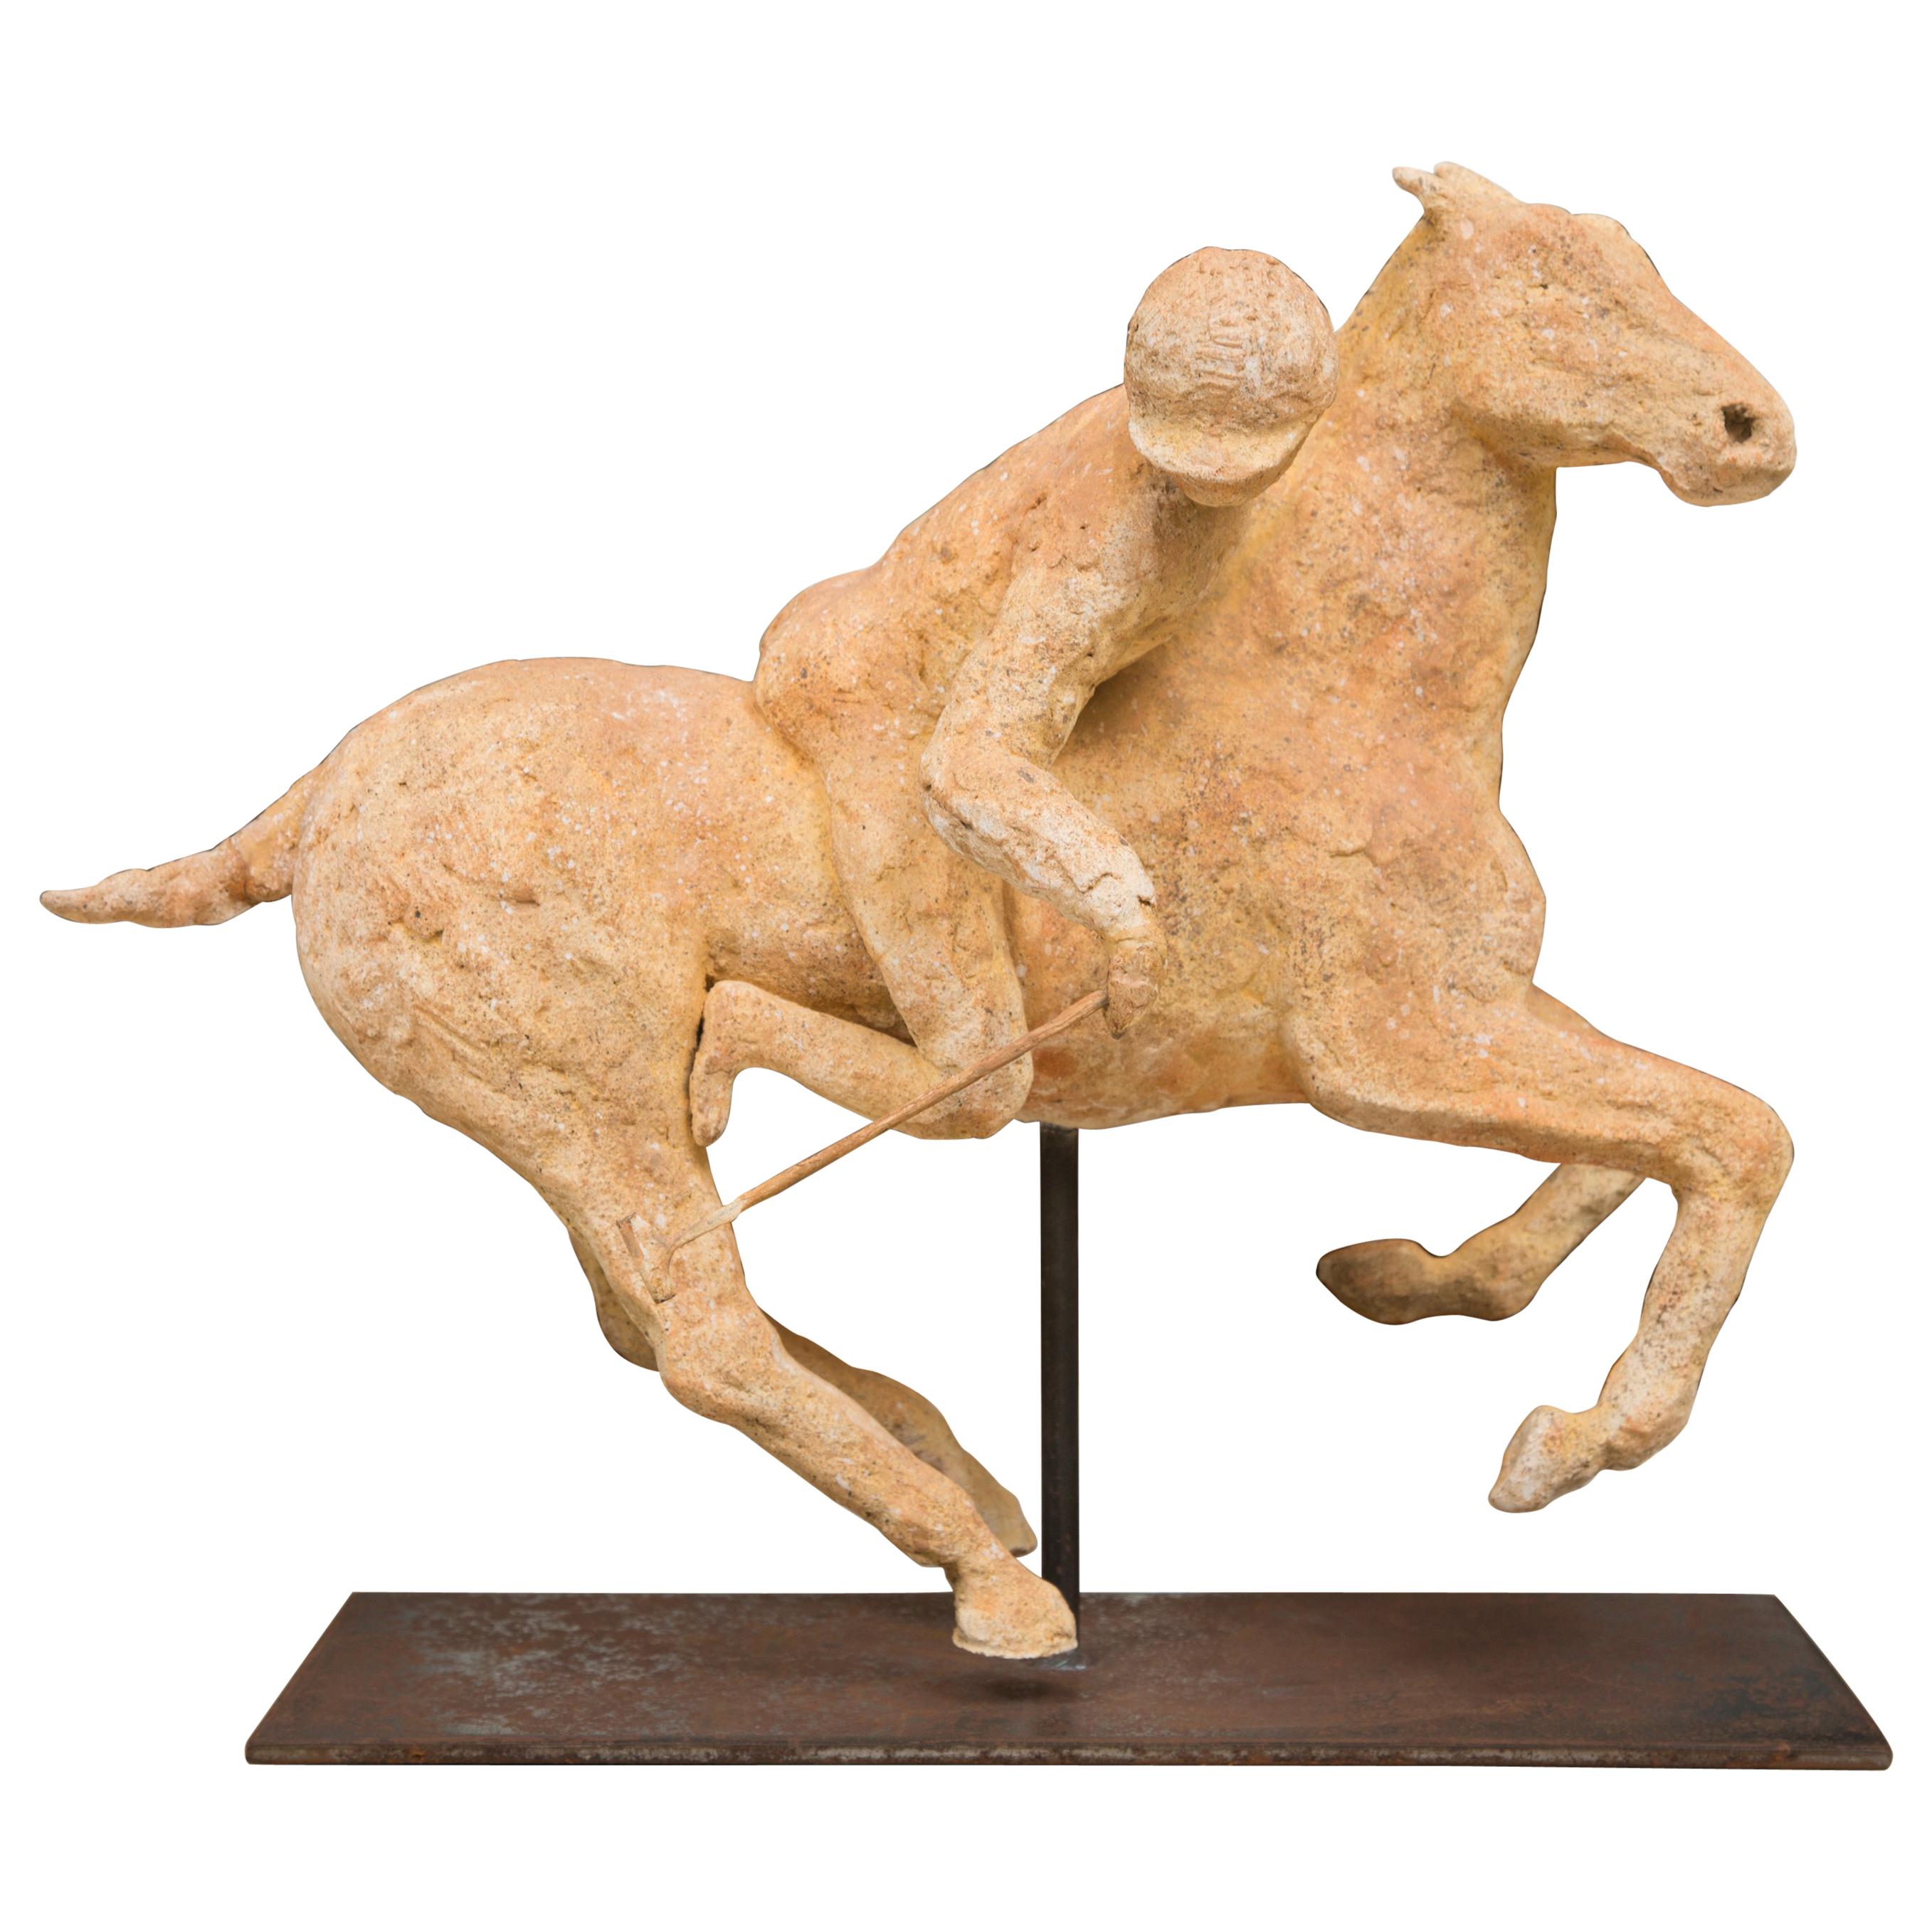 Joueur de polo en terre cuite sur un cheval monté sur un support en métal par "Lara"